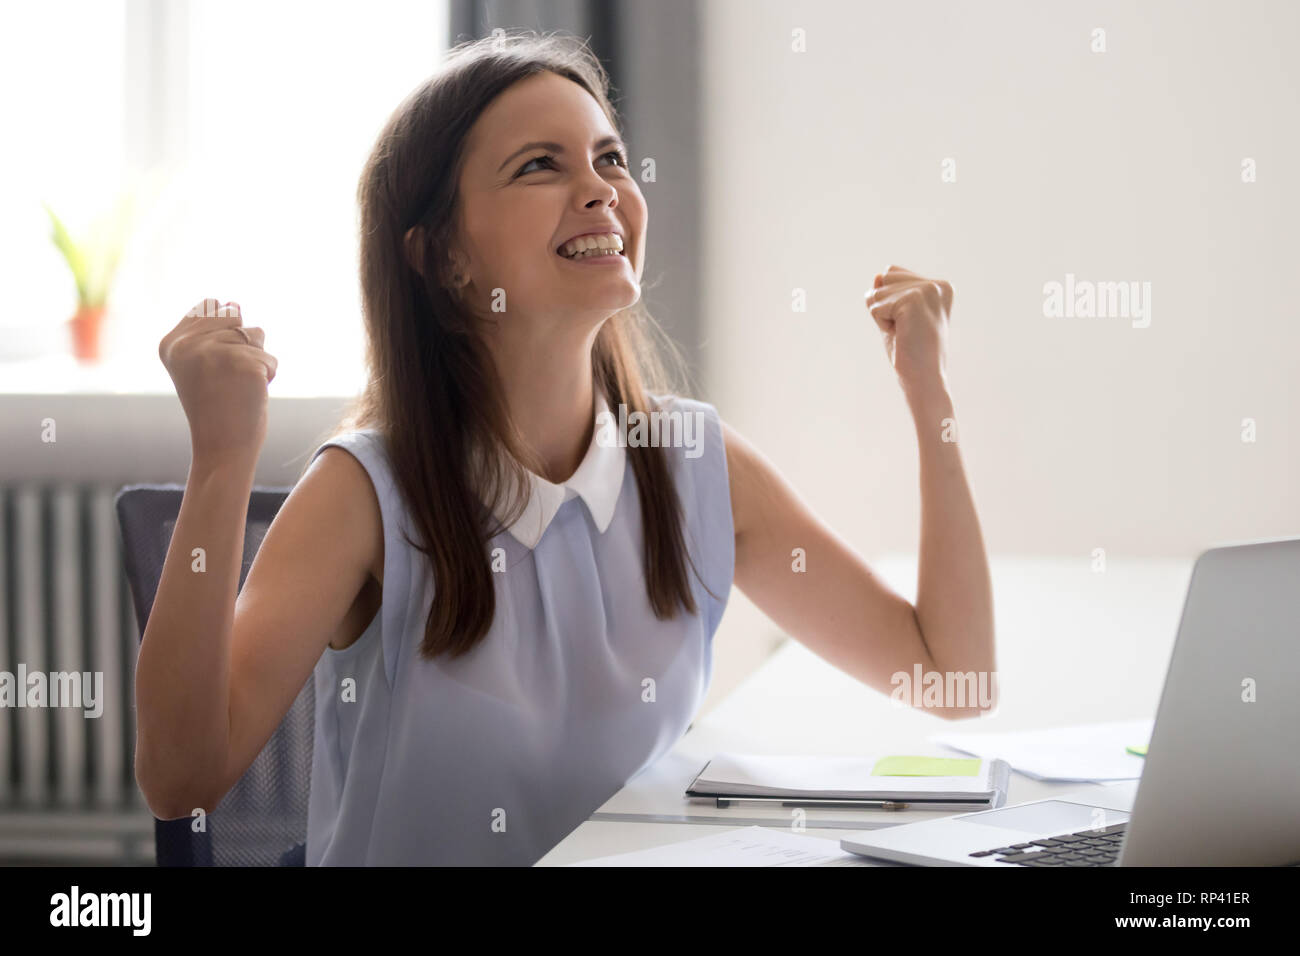 Junge attraktive Frau gerne am Schreibtisch gegenüber Computer sitzen fühlt  sich Aufregung um monetäre Belohnung für gute produktive Arbeit,  erfolgreiche completio Stockfotografie - Alamy